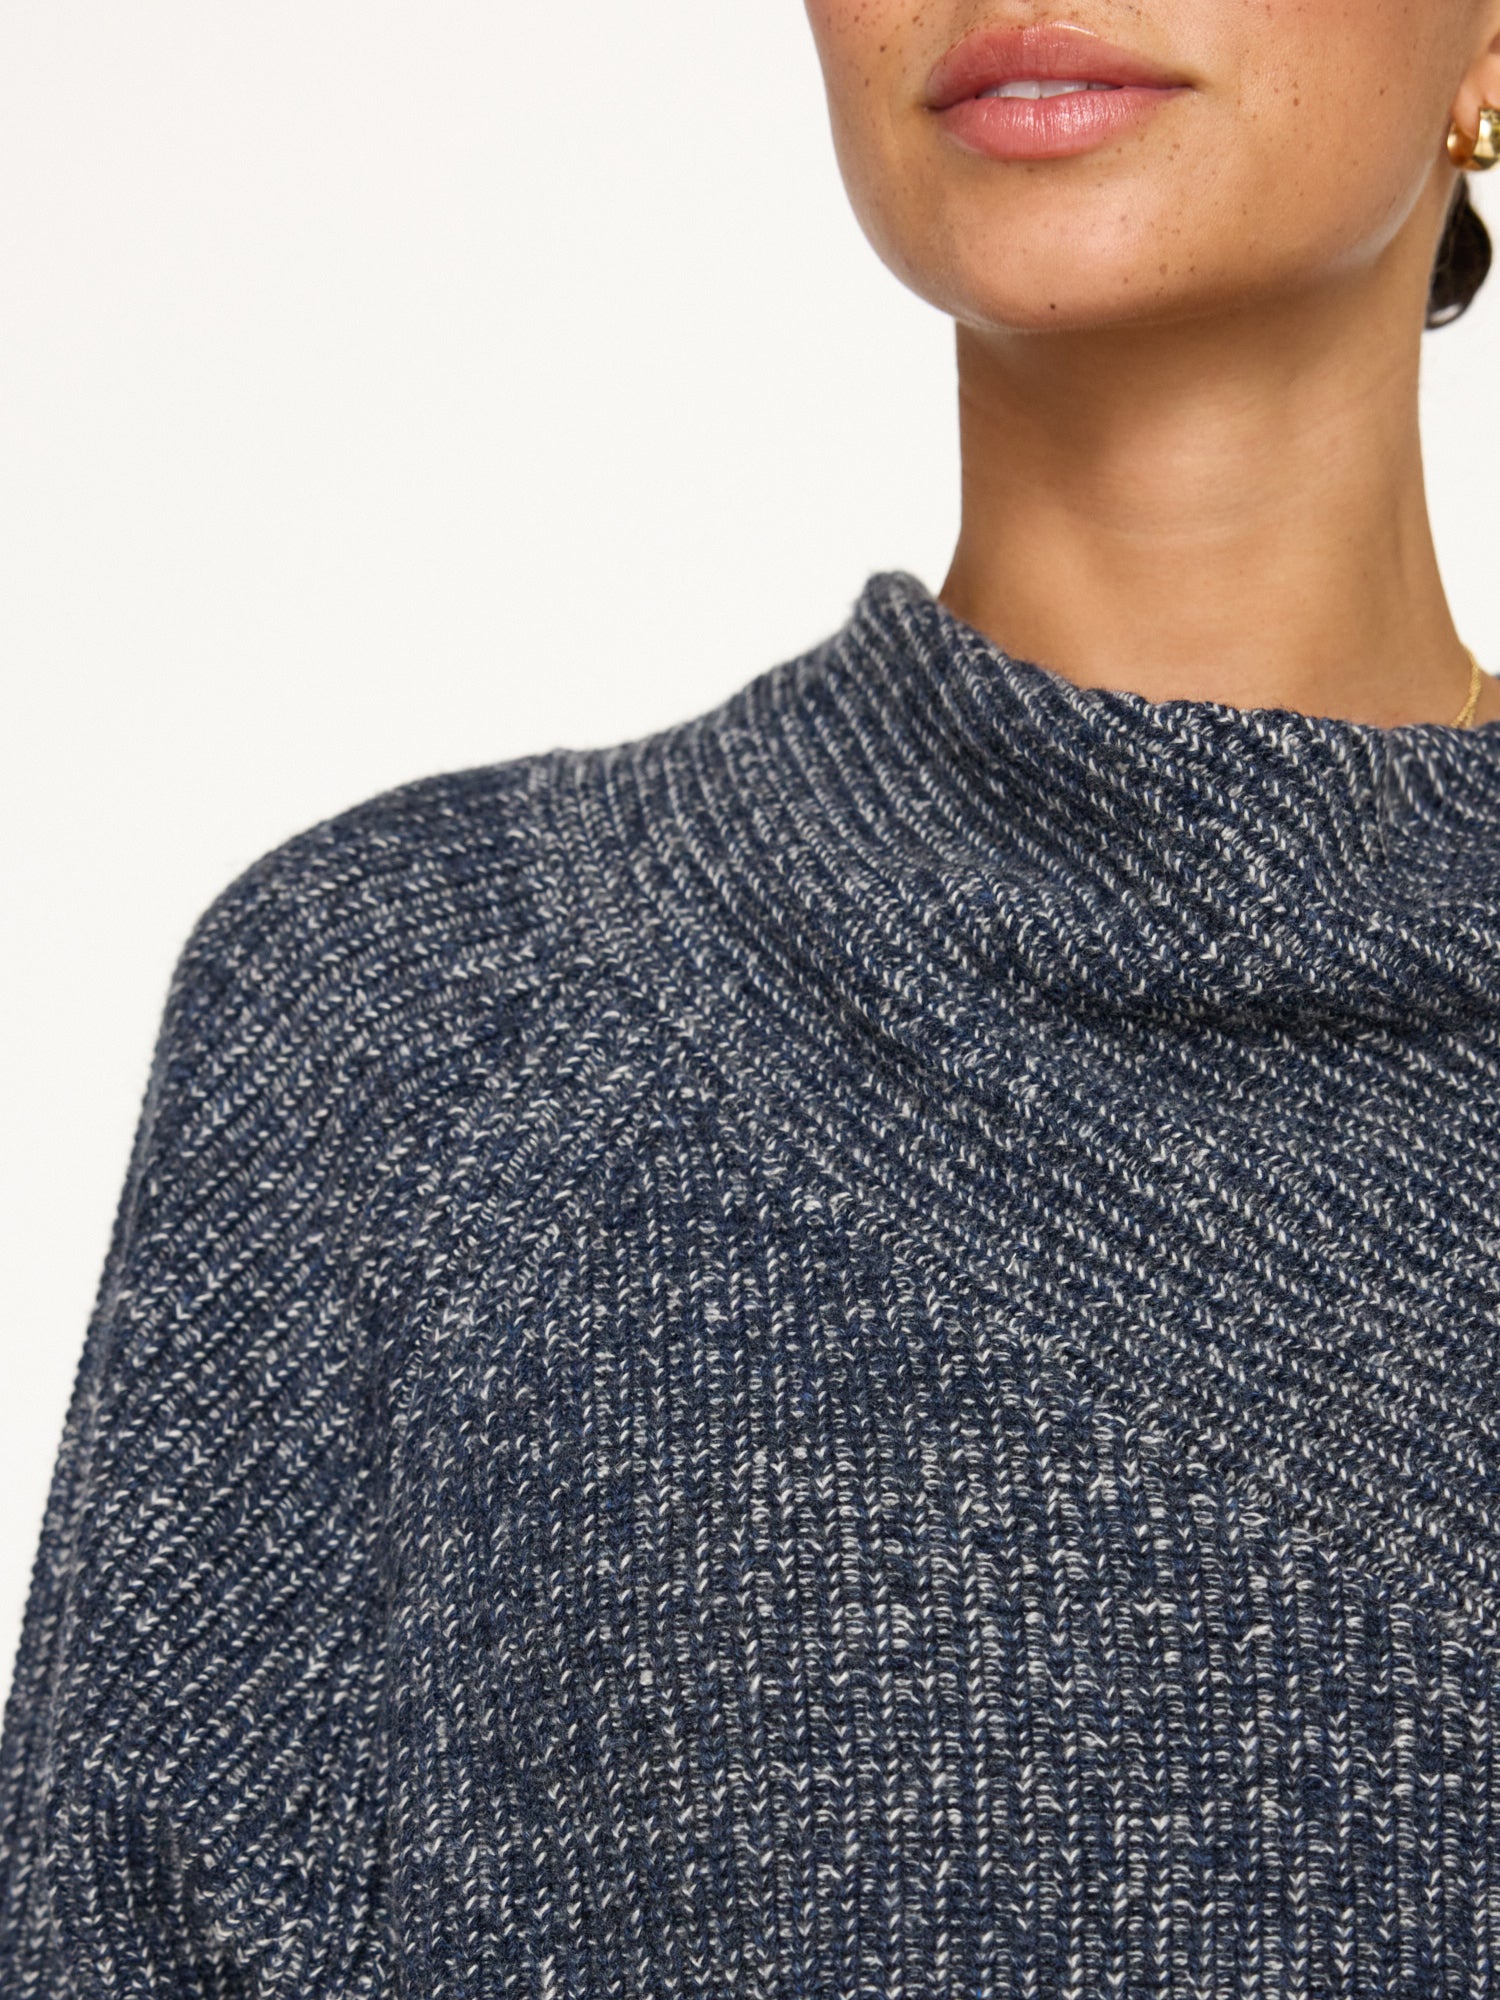 Leith indigo cowl neck sweater close up